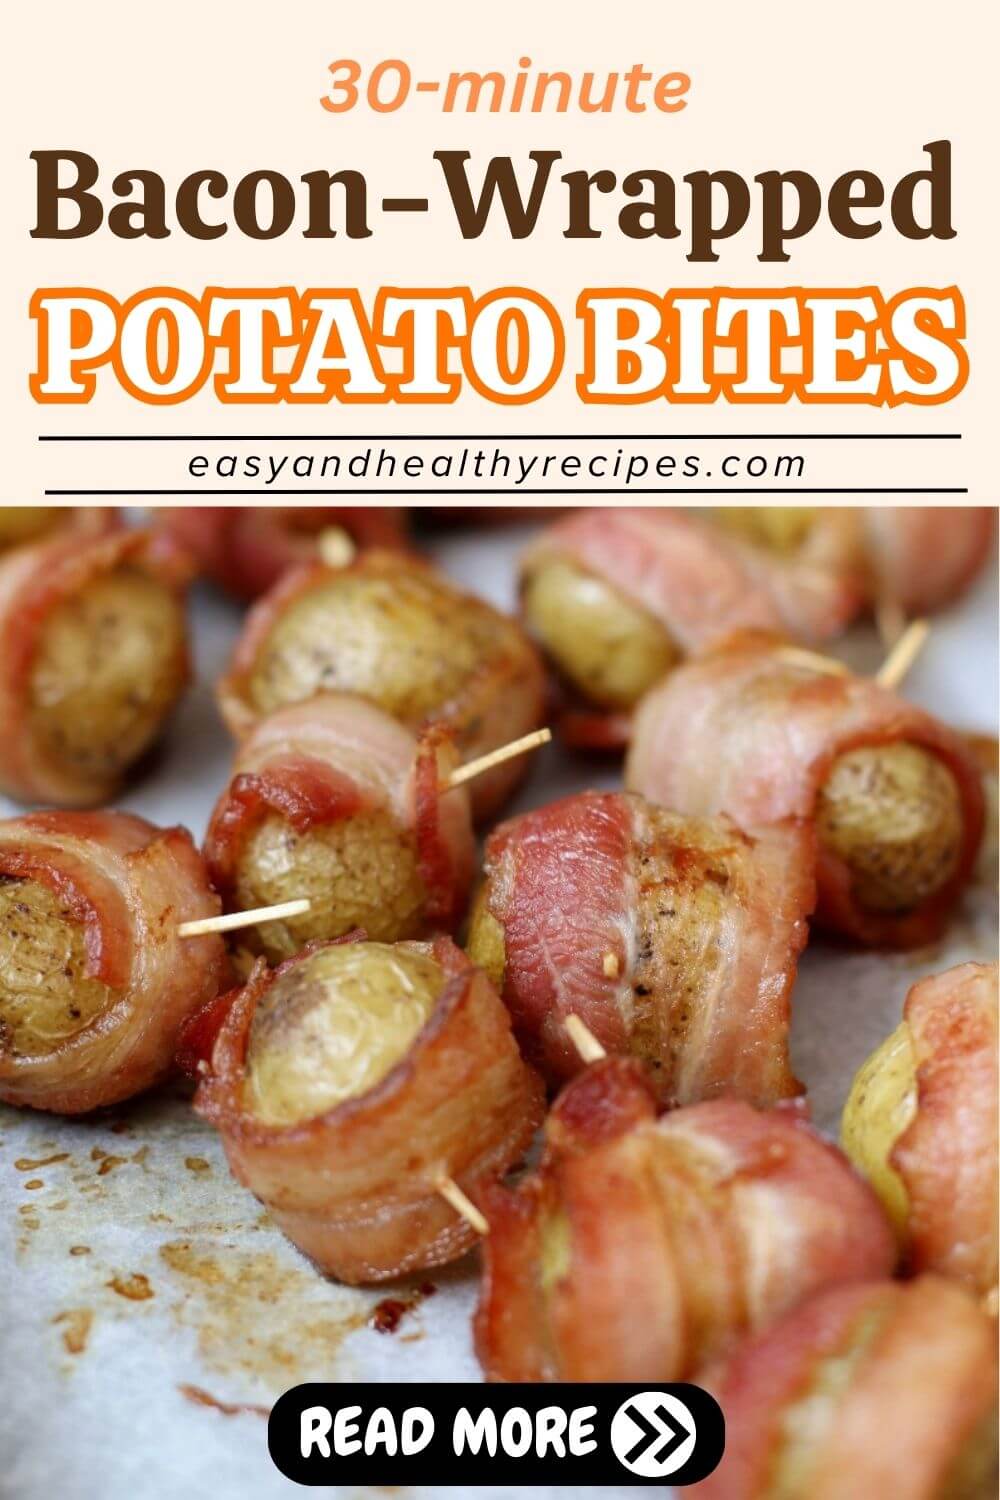 Bacon-Wrapped Potato Bites